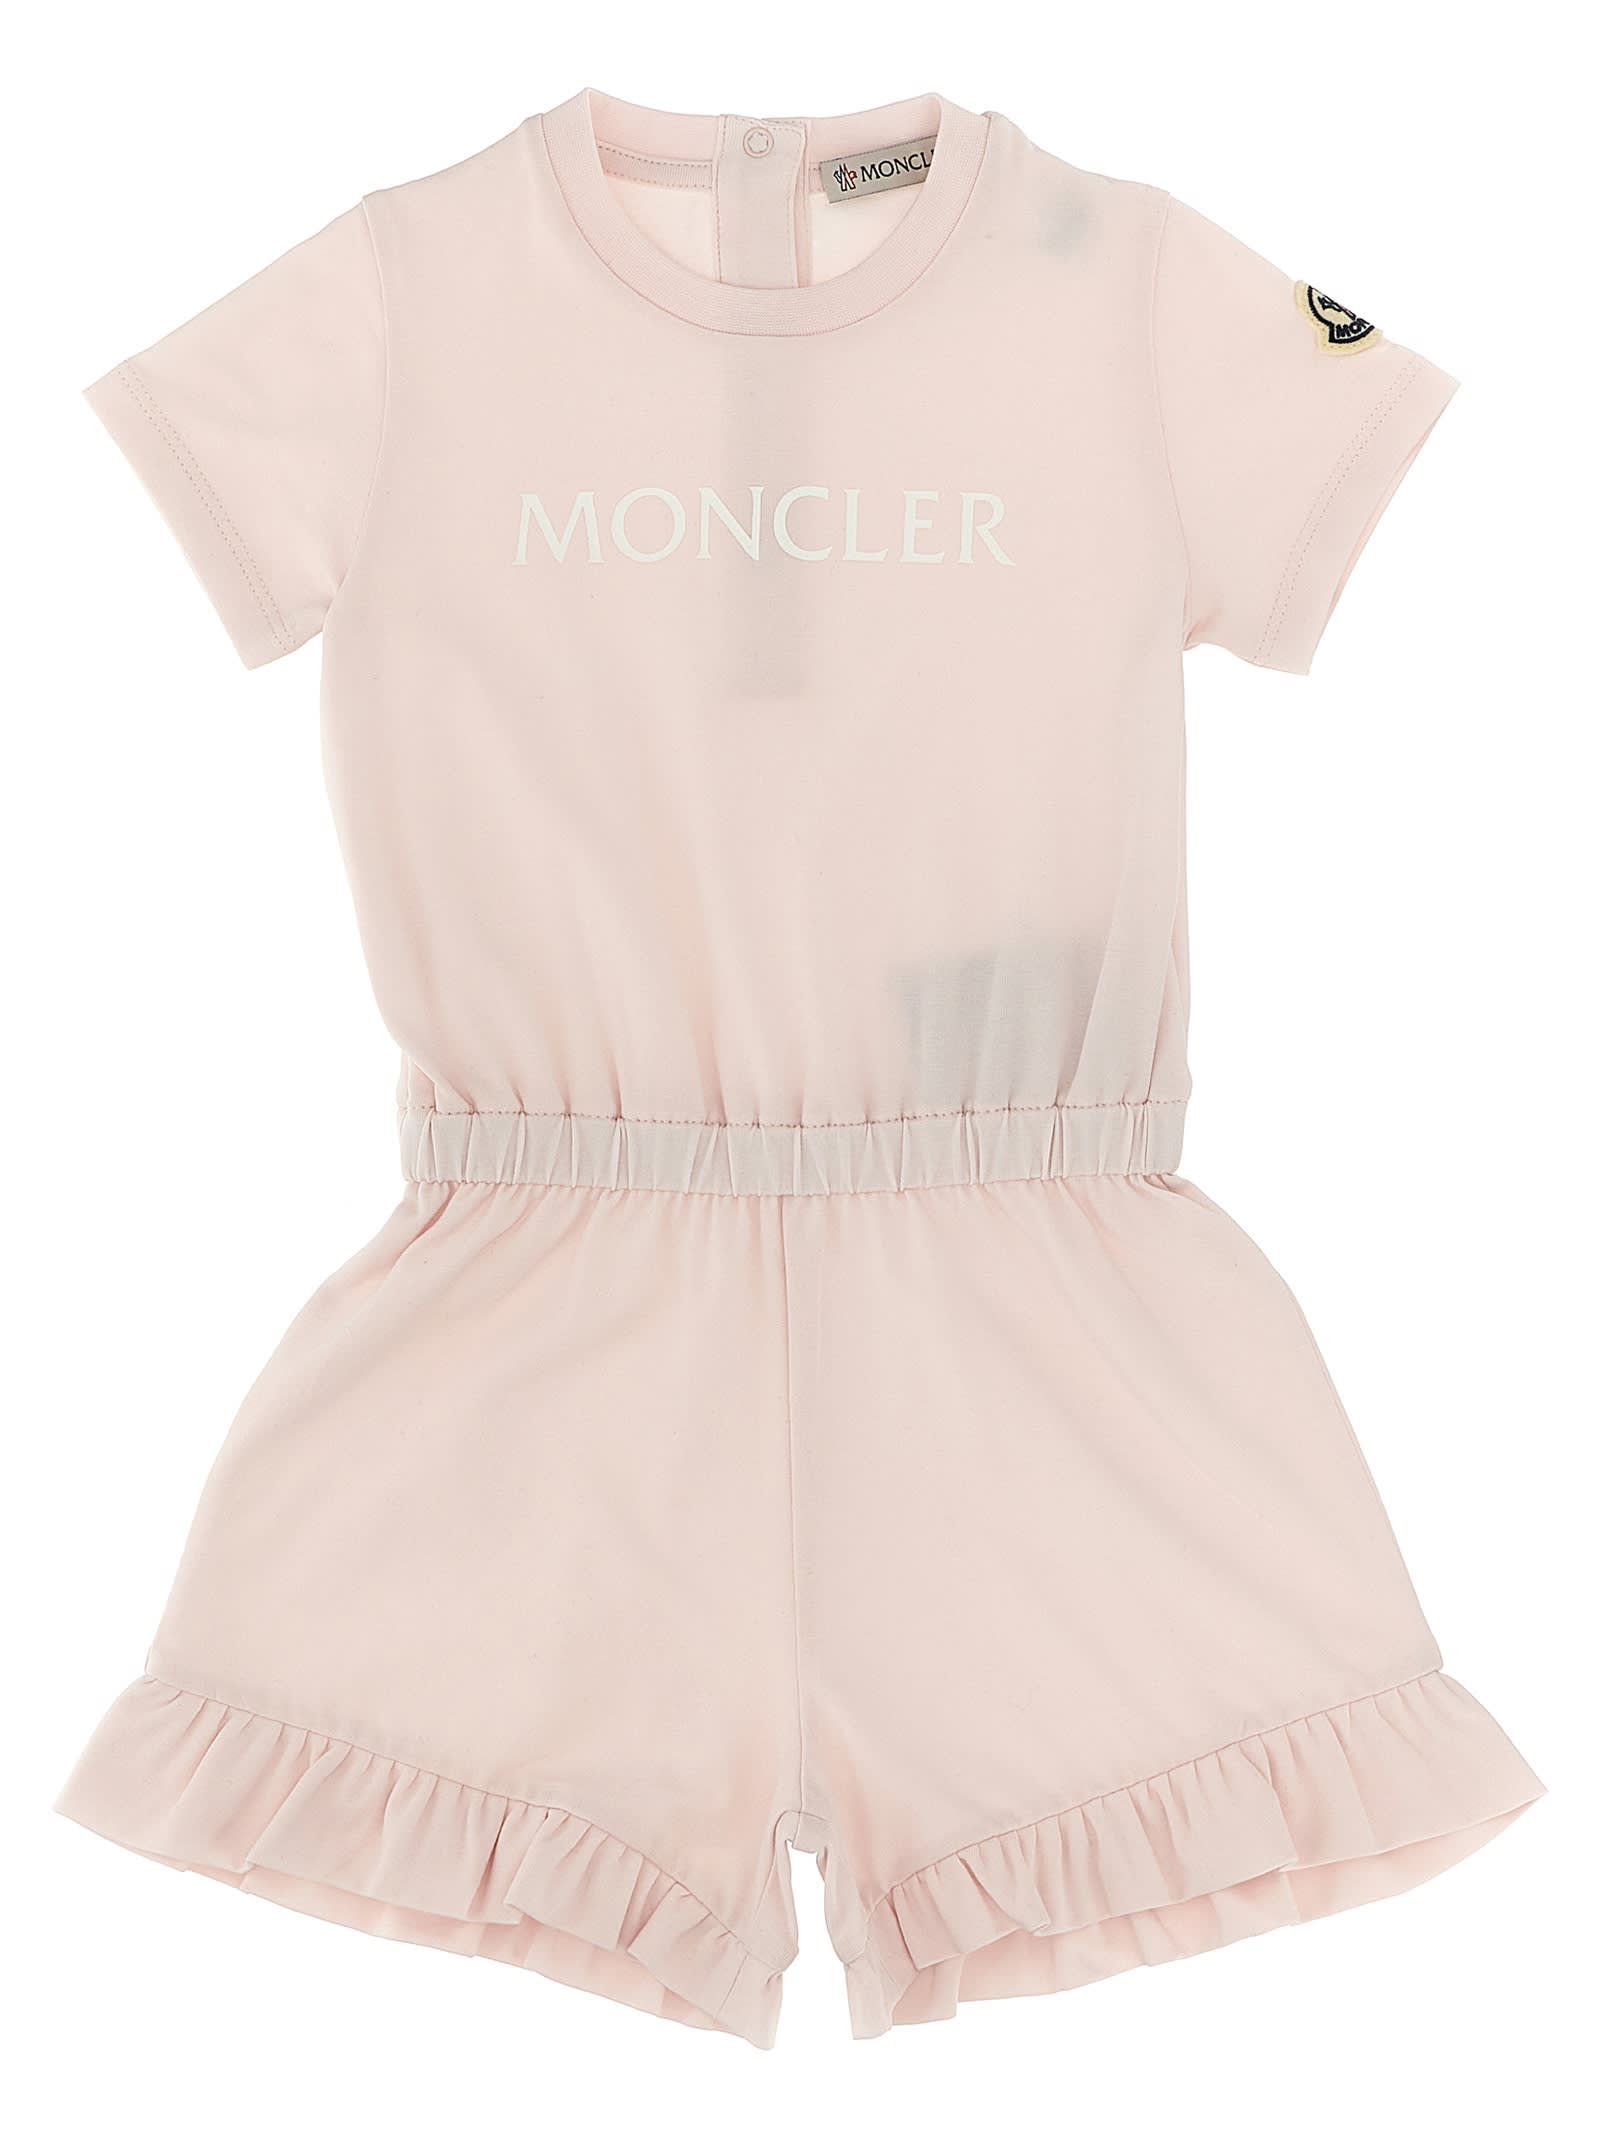 Moncler Babies' Logo Print Bib In Pink